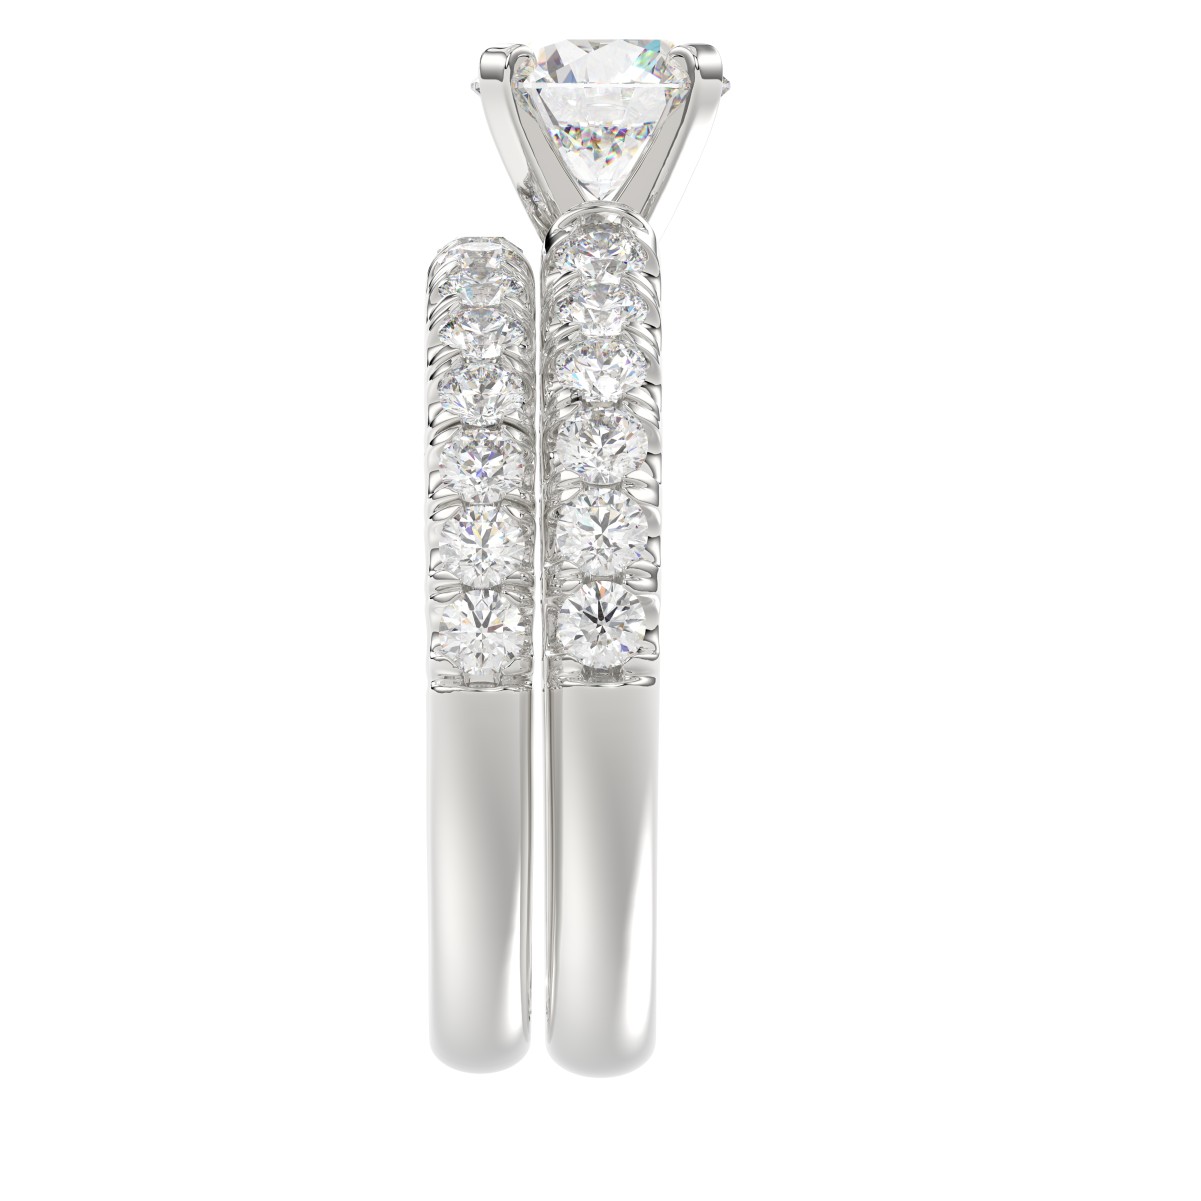 14K WHITE GOLD 1CT ROUND DIAMOND LADIES BRIDAL SET(CENTER STONE MOUNT ROUND DIAMOND 1CT)